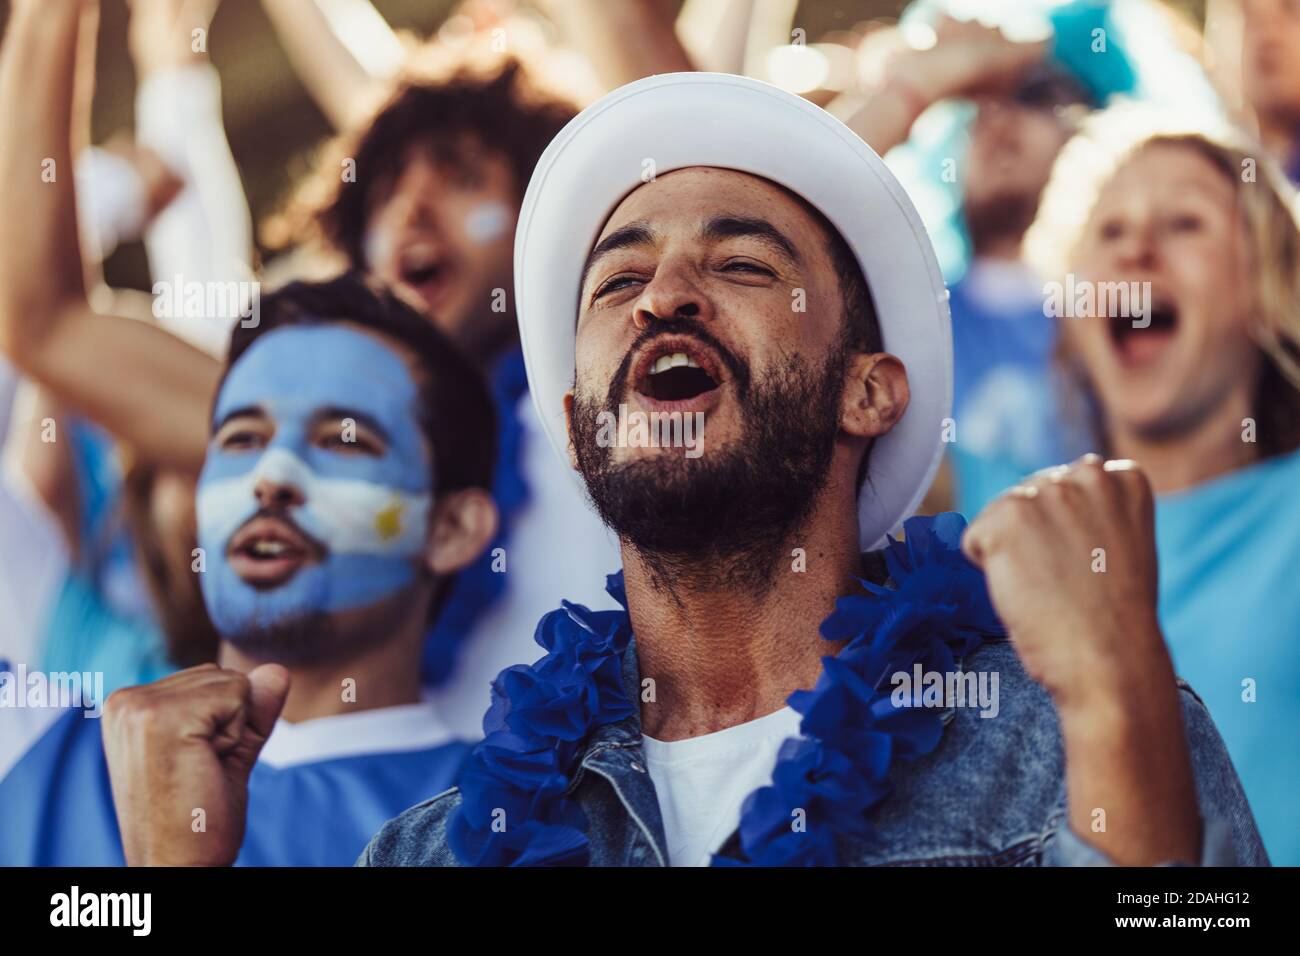 Eine Menge argentinischer Fußballfans jubelte ihr Team mit blauen Girlanden und argentinischen Fahnen im Stadion. Fußballfans sitzen im Stadion Cheeri Stockfoto